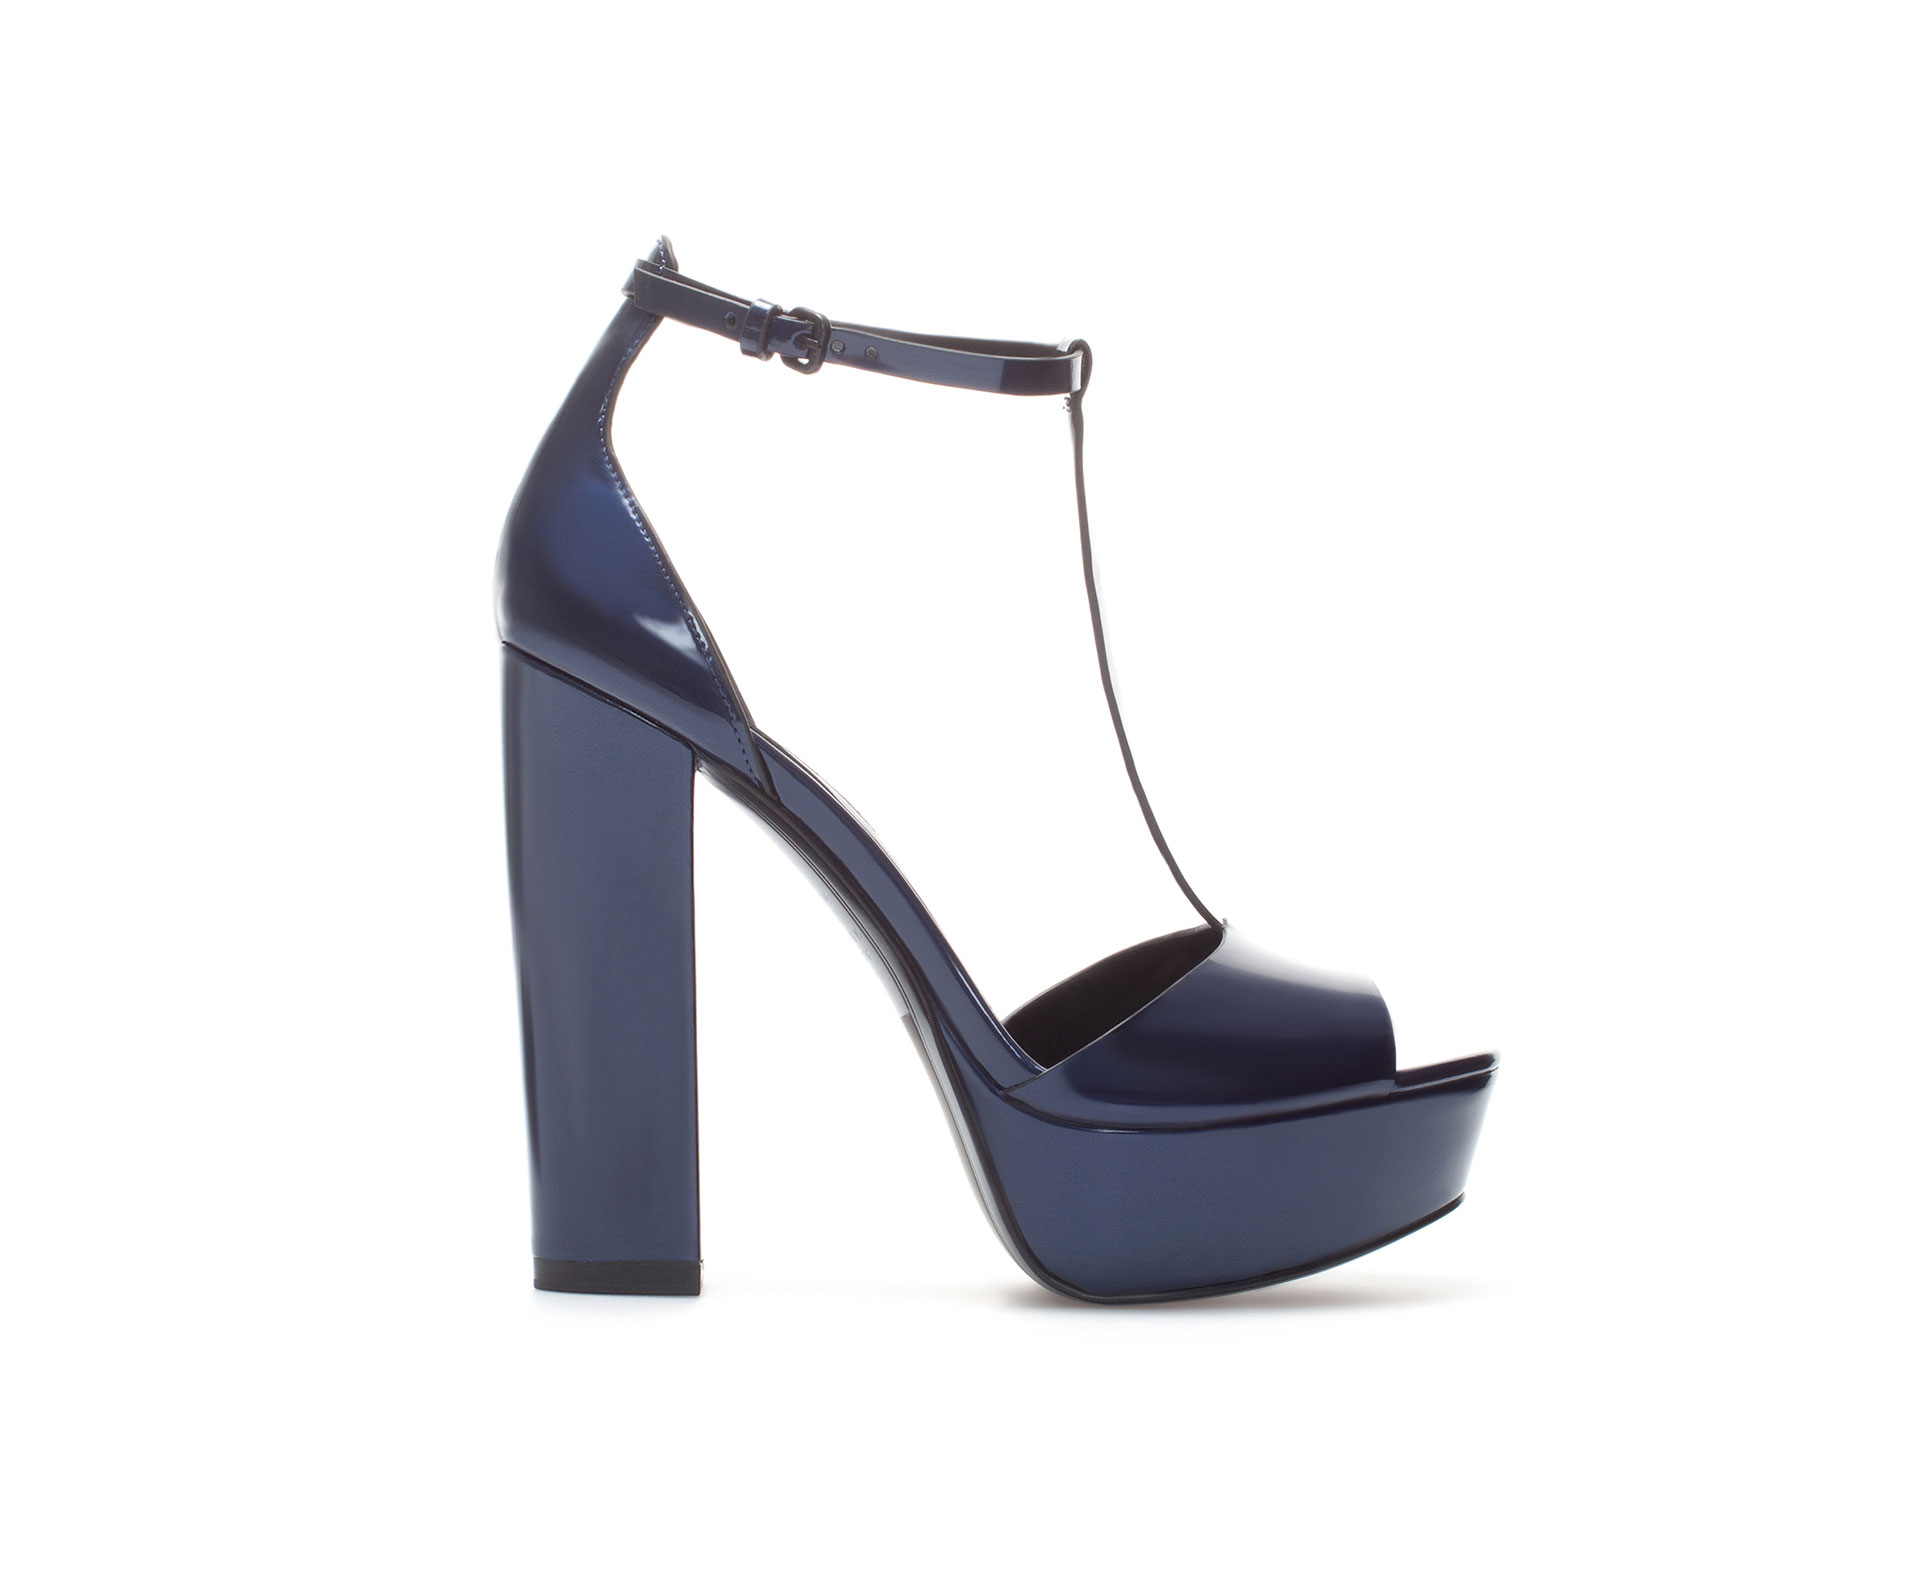 Zara Patent Leather Platform Sandals in Blue (Navy blue) | Lyst